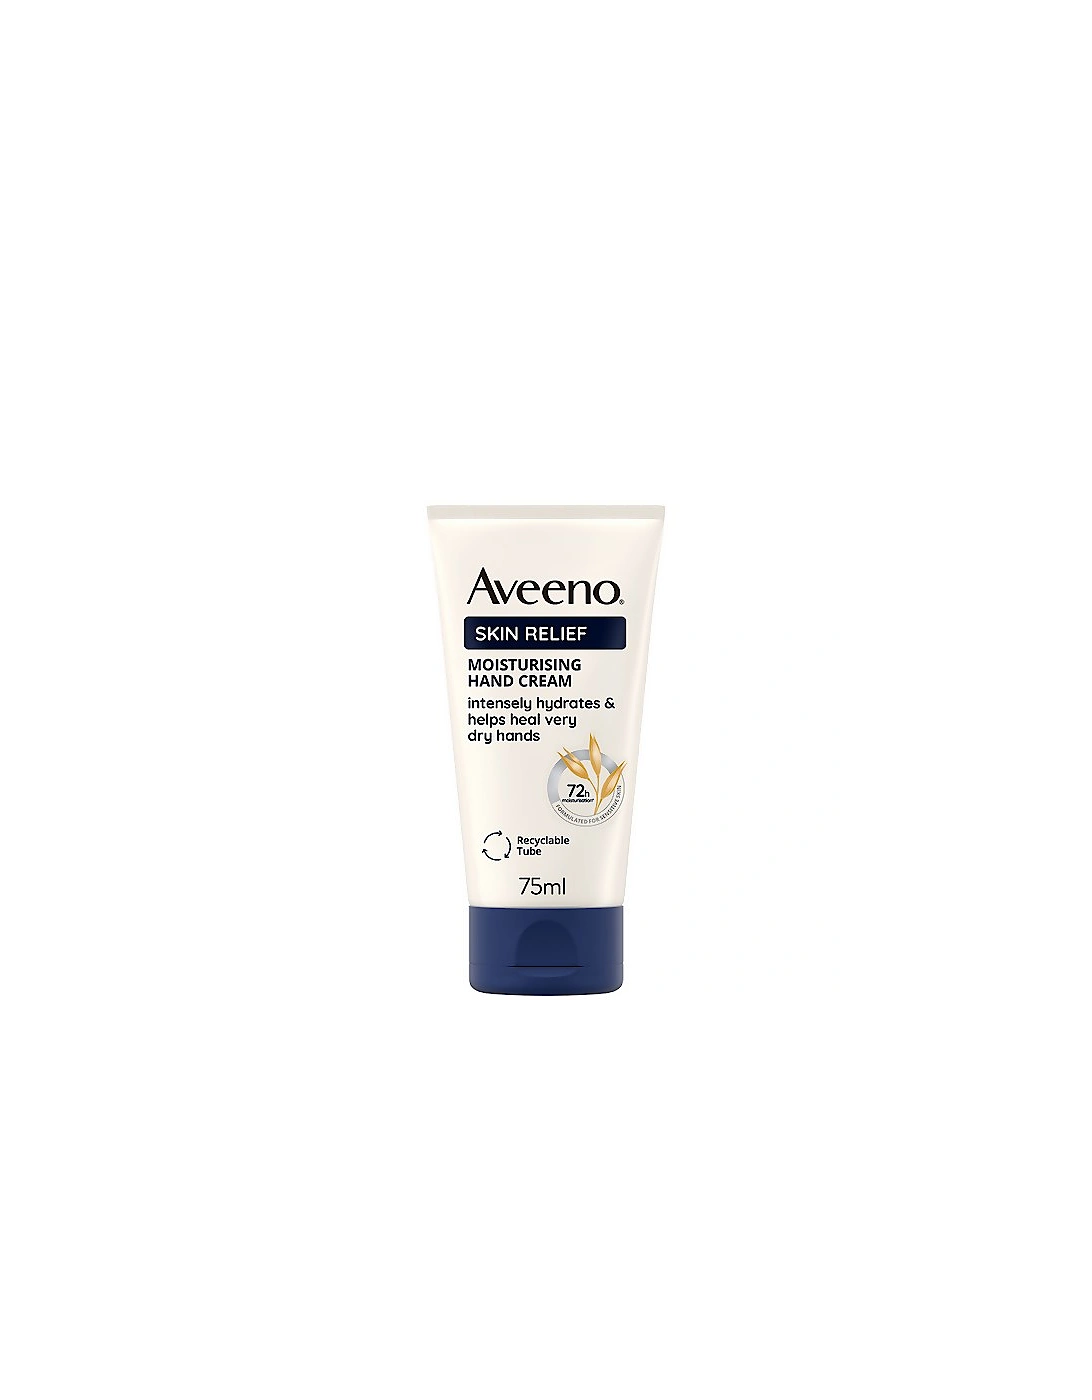 Skin Relief Moisturising Hand Cream 75ml - Aveeno, 2 of 1